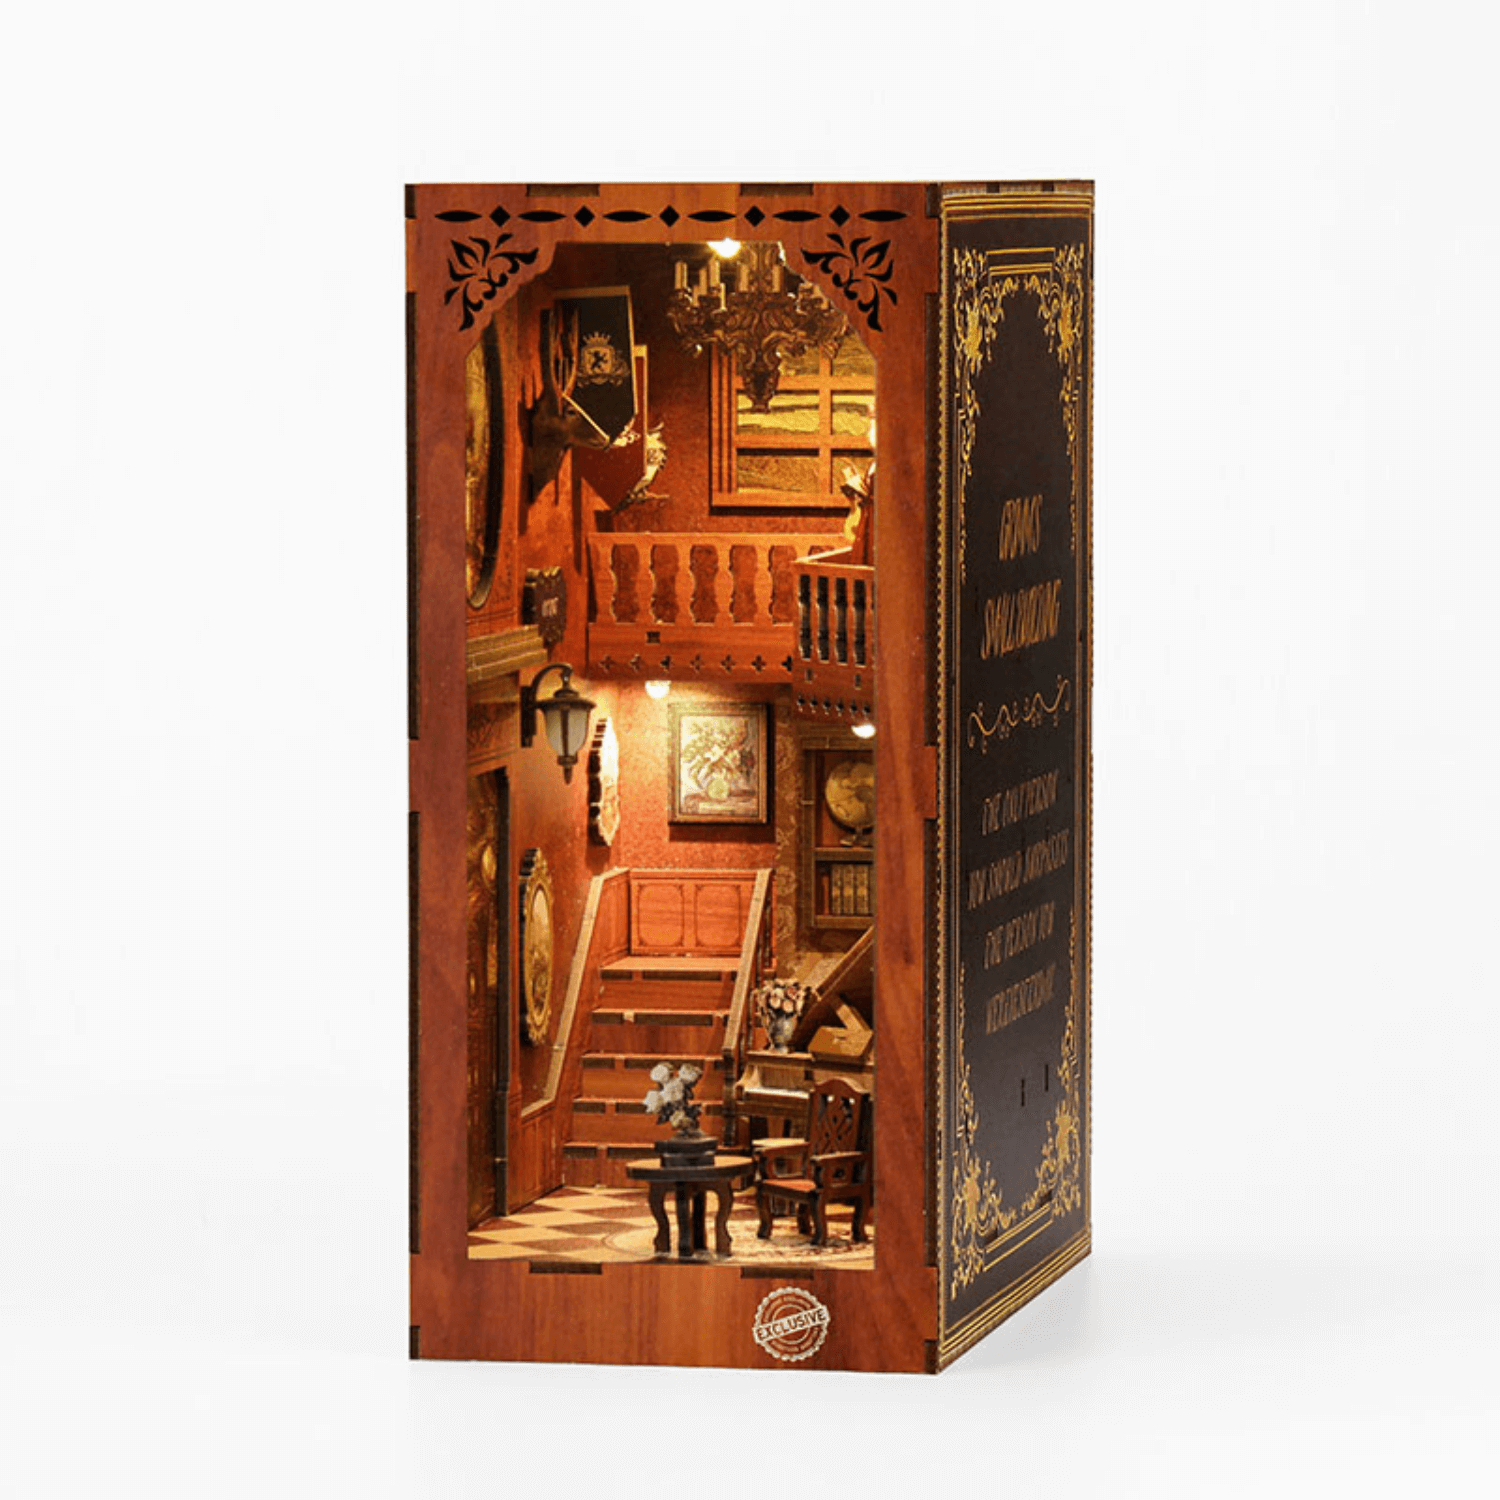 Grimm's kleines Haus | Diorama | Book Nook-Diorama-MagicHolz--